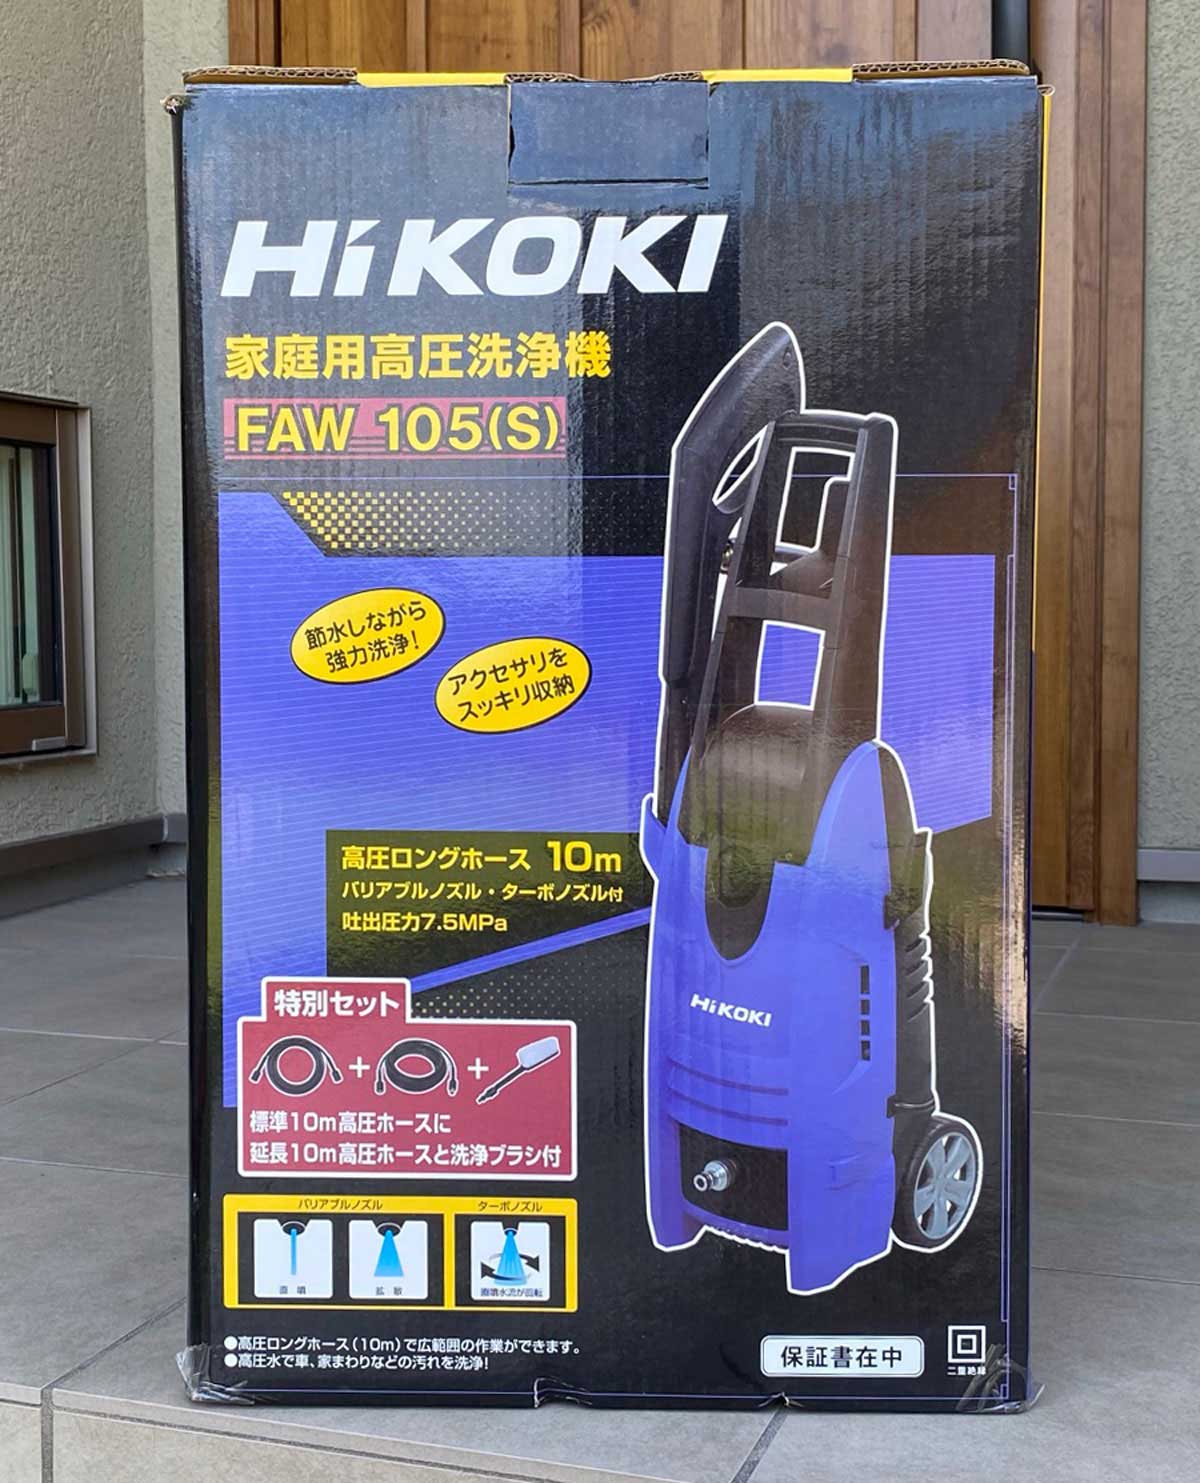 HiKOKI(ハイコーキ) 家庭用高圧洗浄機 FAW105 1台